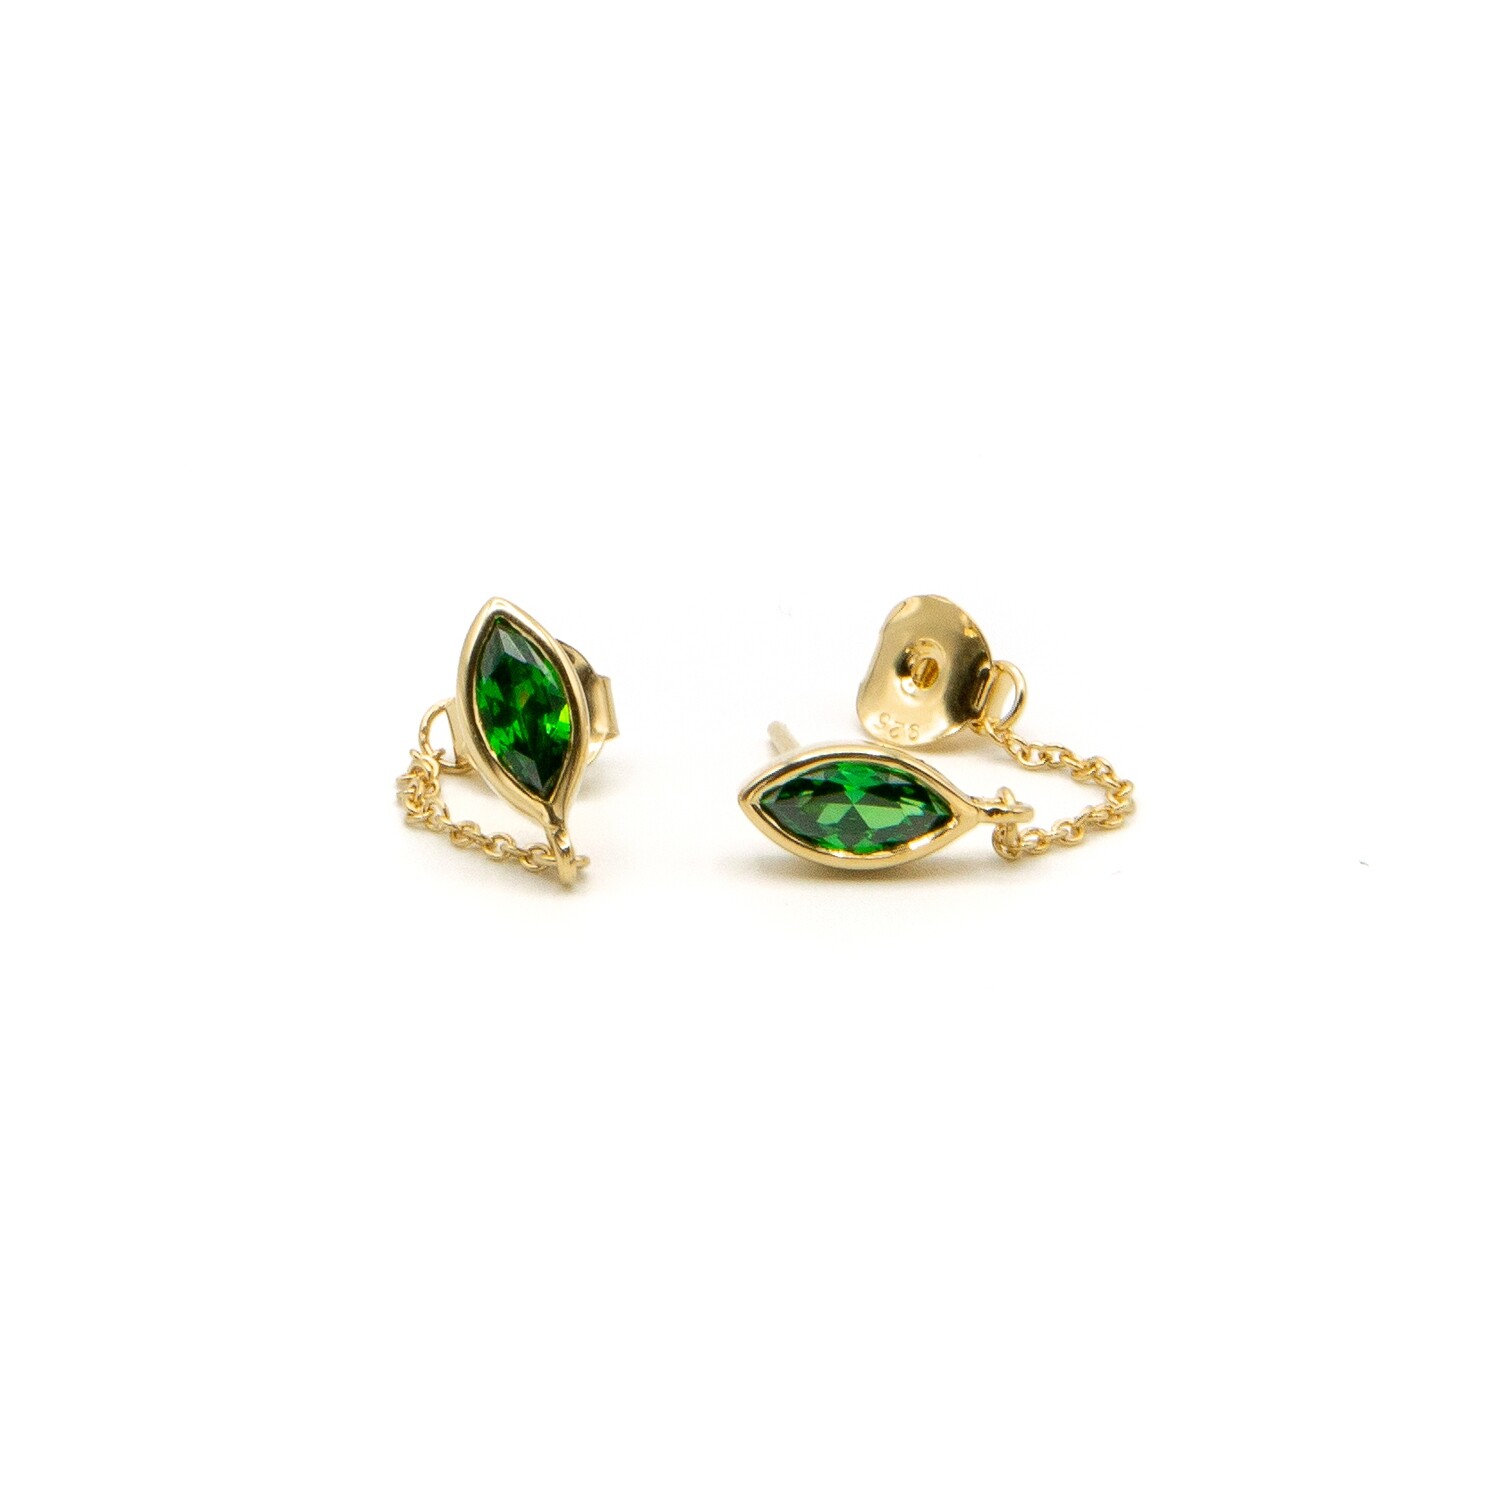 Katmandou green earrings